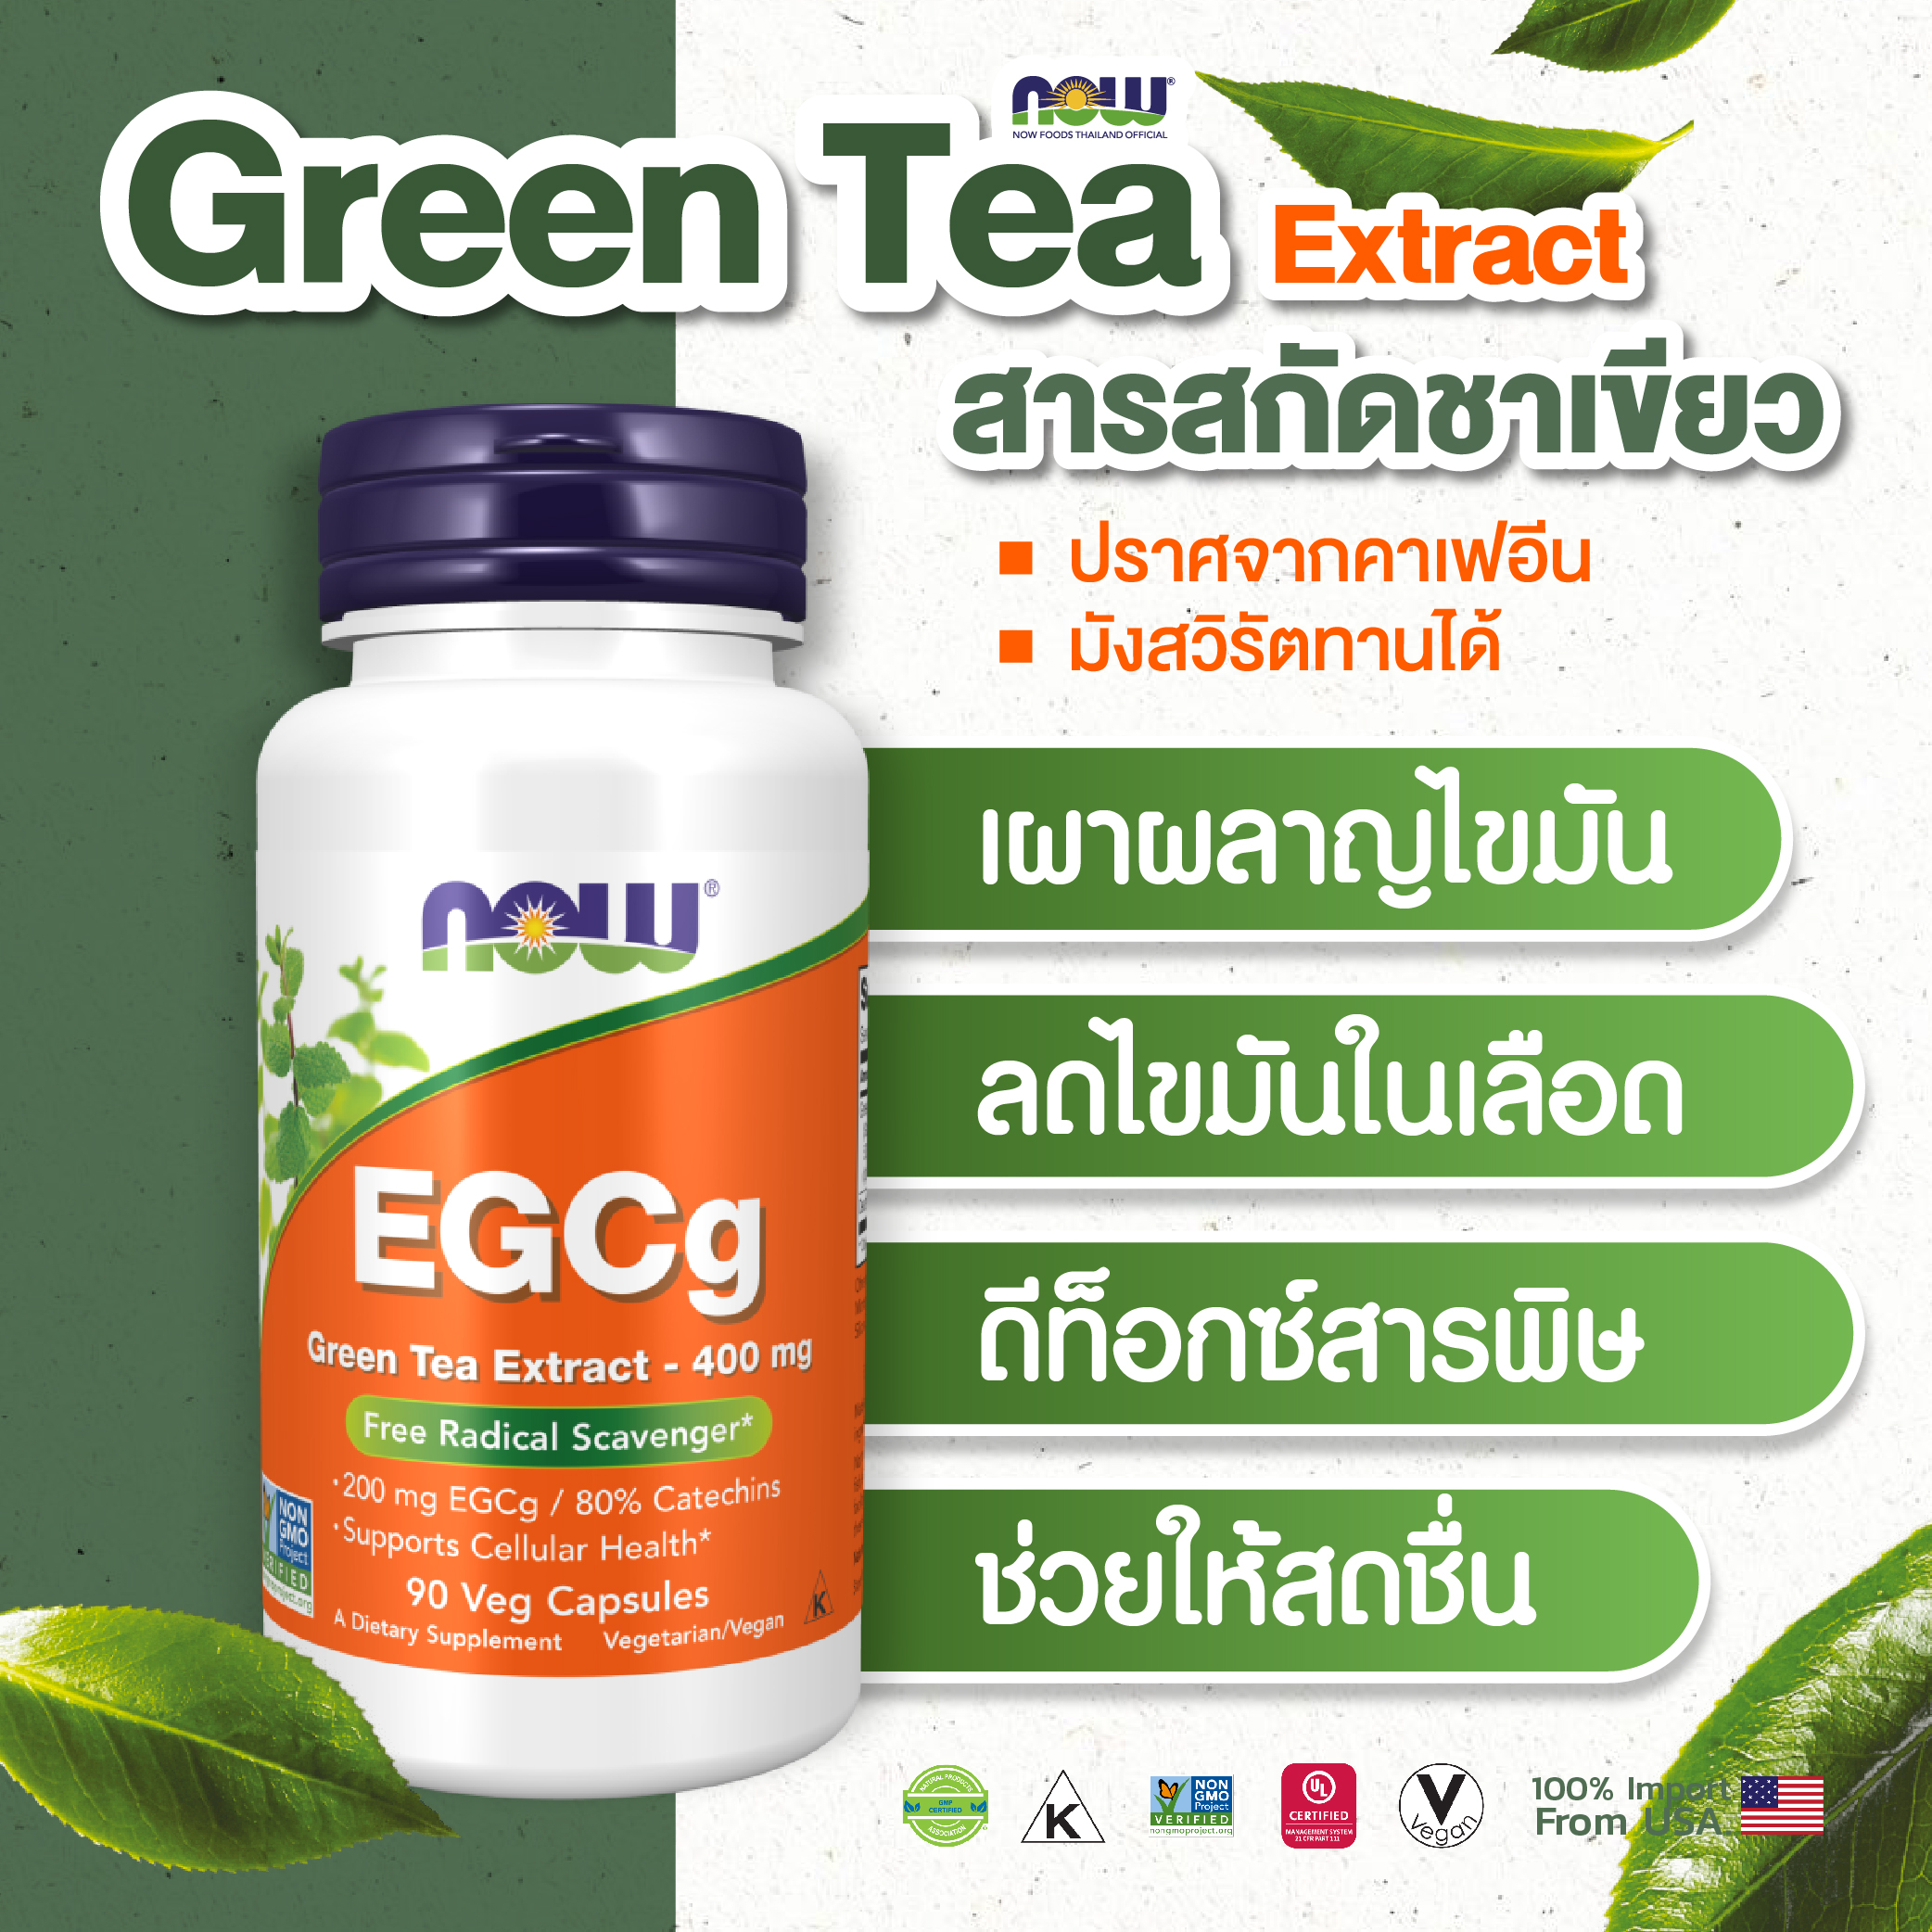 [ลูกค้าใหม่กรอก FORYOU89 ลดเลย 89.-] NOW Green Tea Extract 400 mg (90 Veg Capsule)